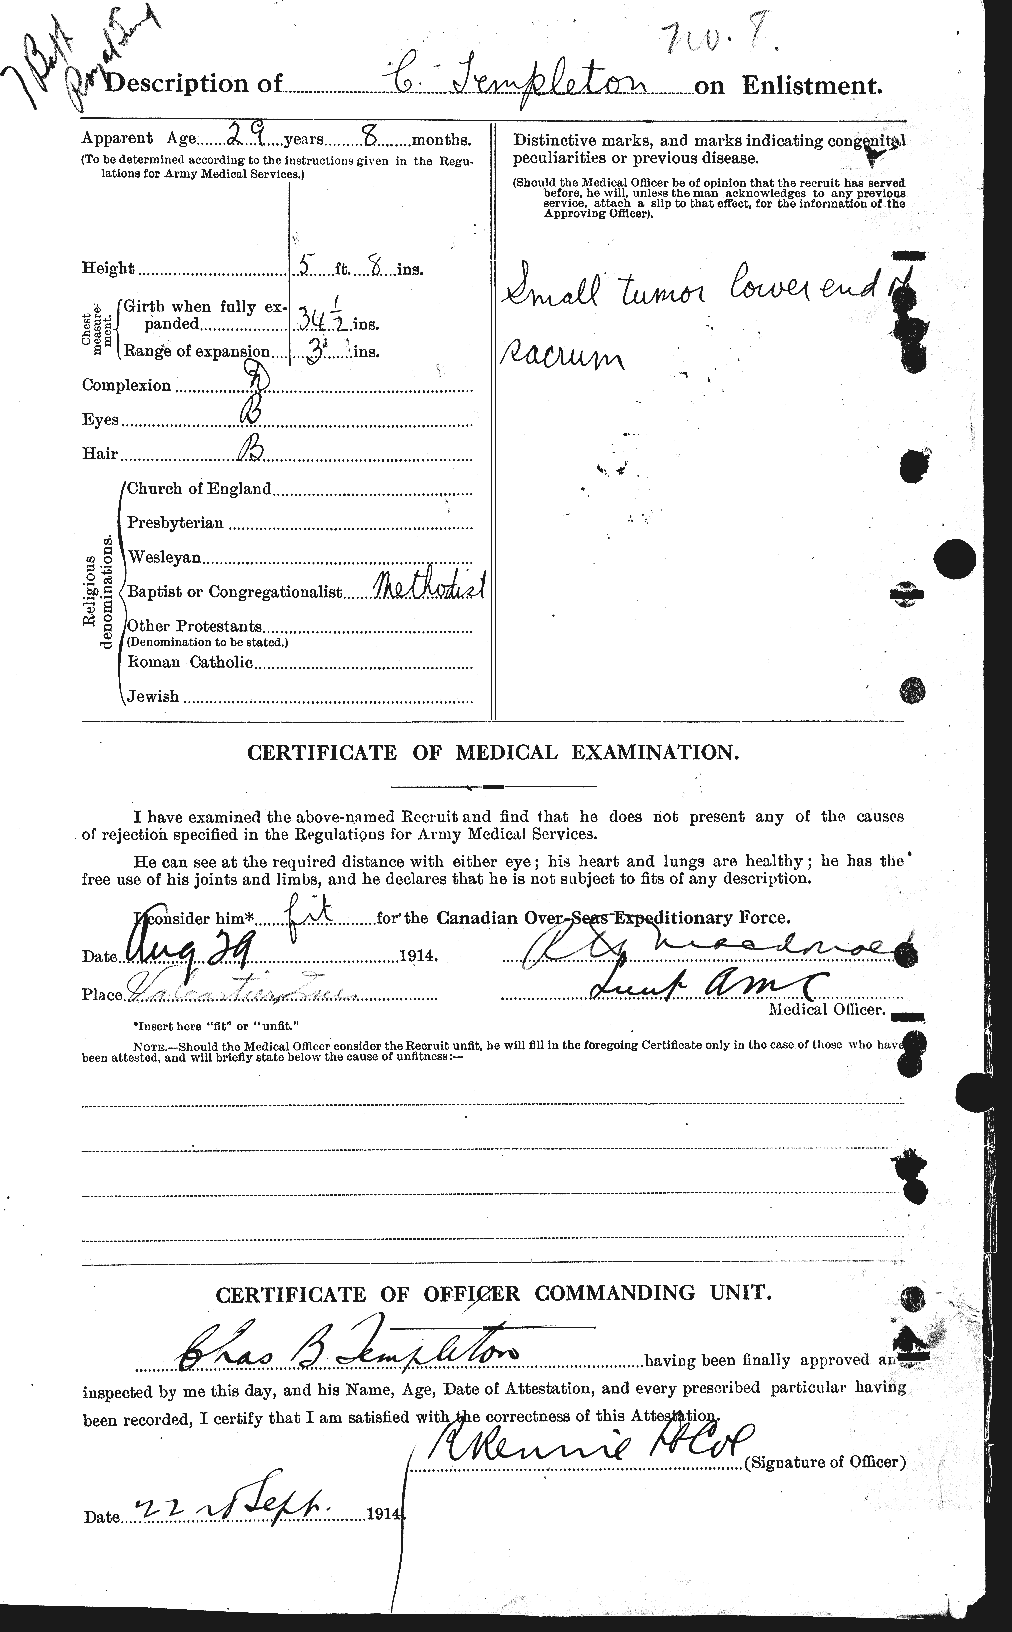 Dossiers du Personnel de la Première Guerre mondiale - CEC 629146b